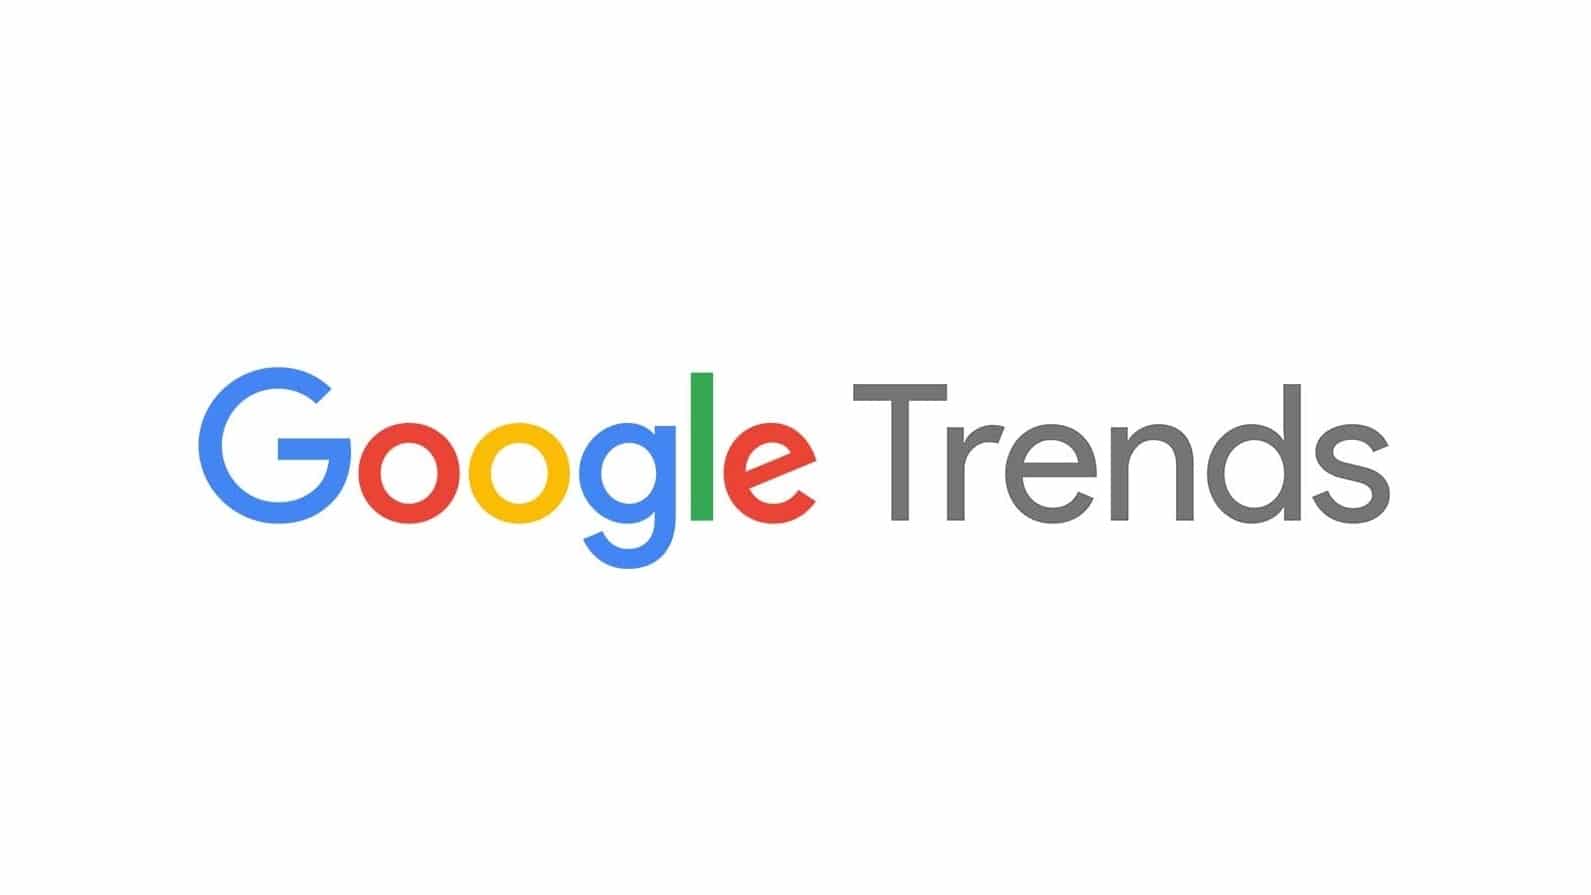 Come utilizzare Google trends?